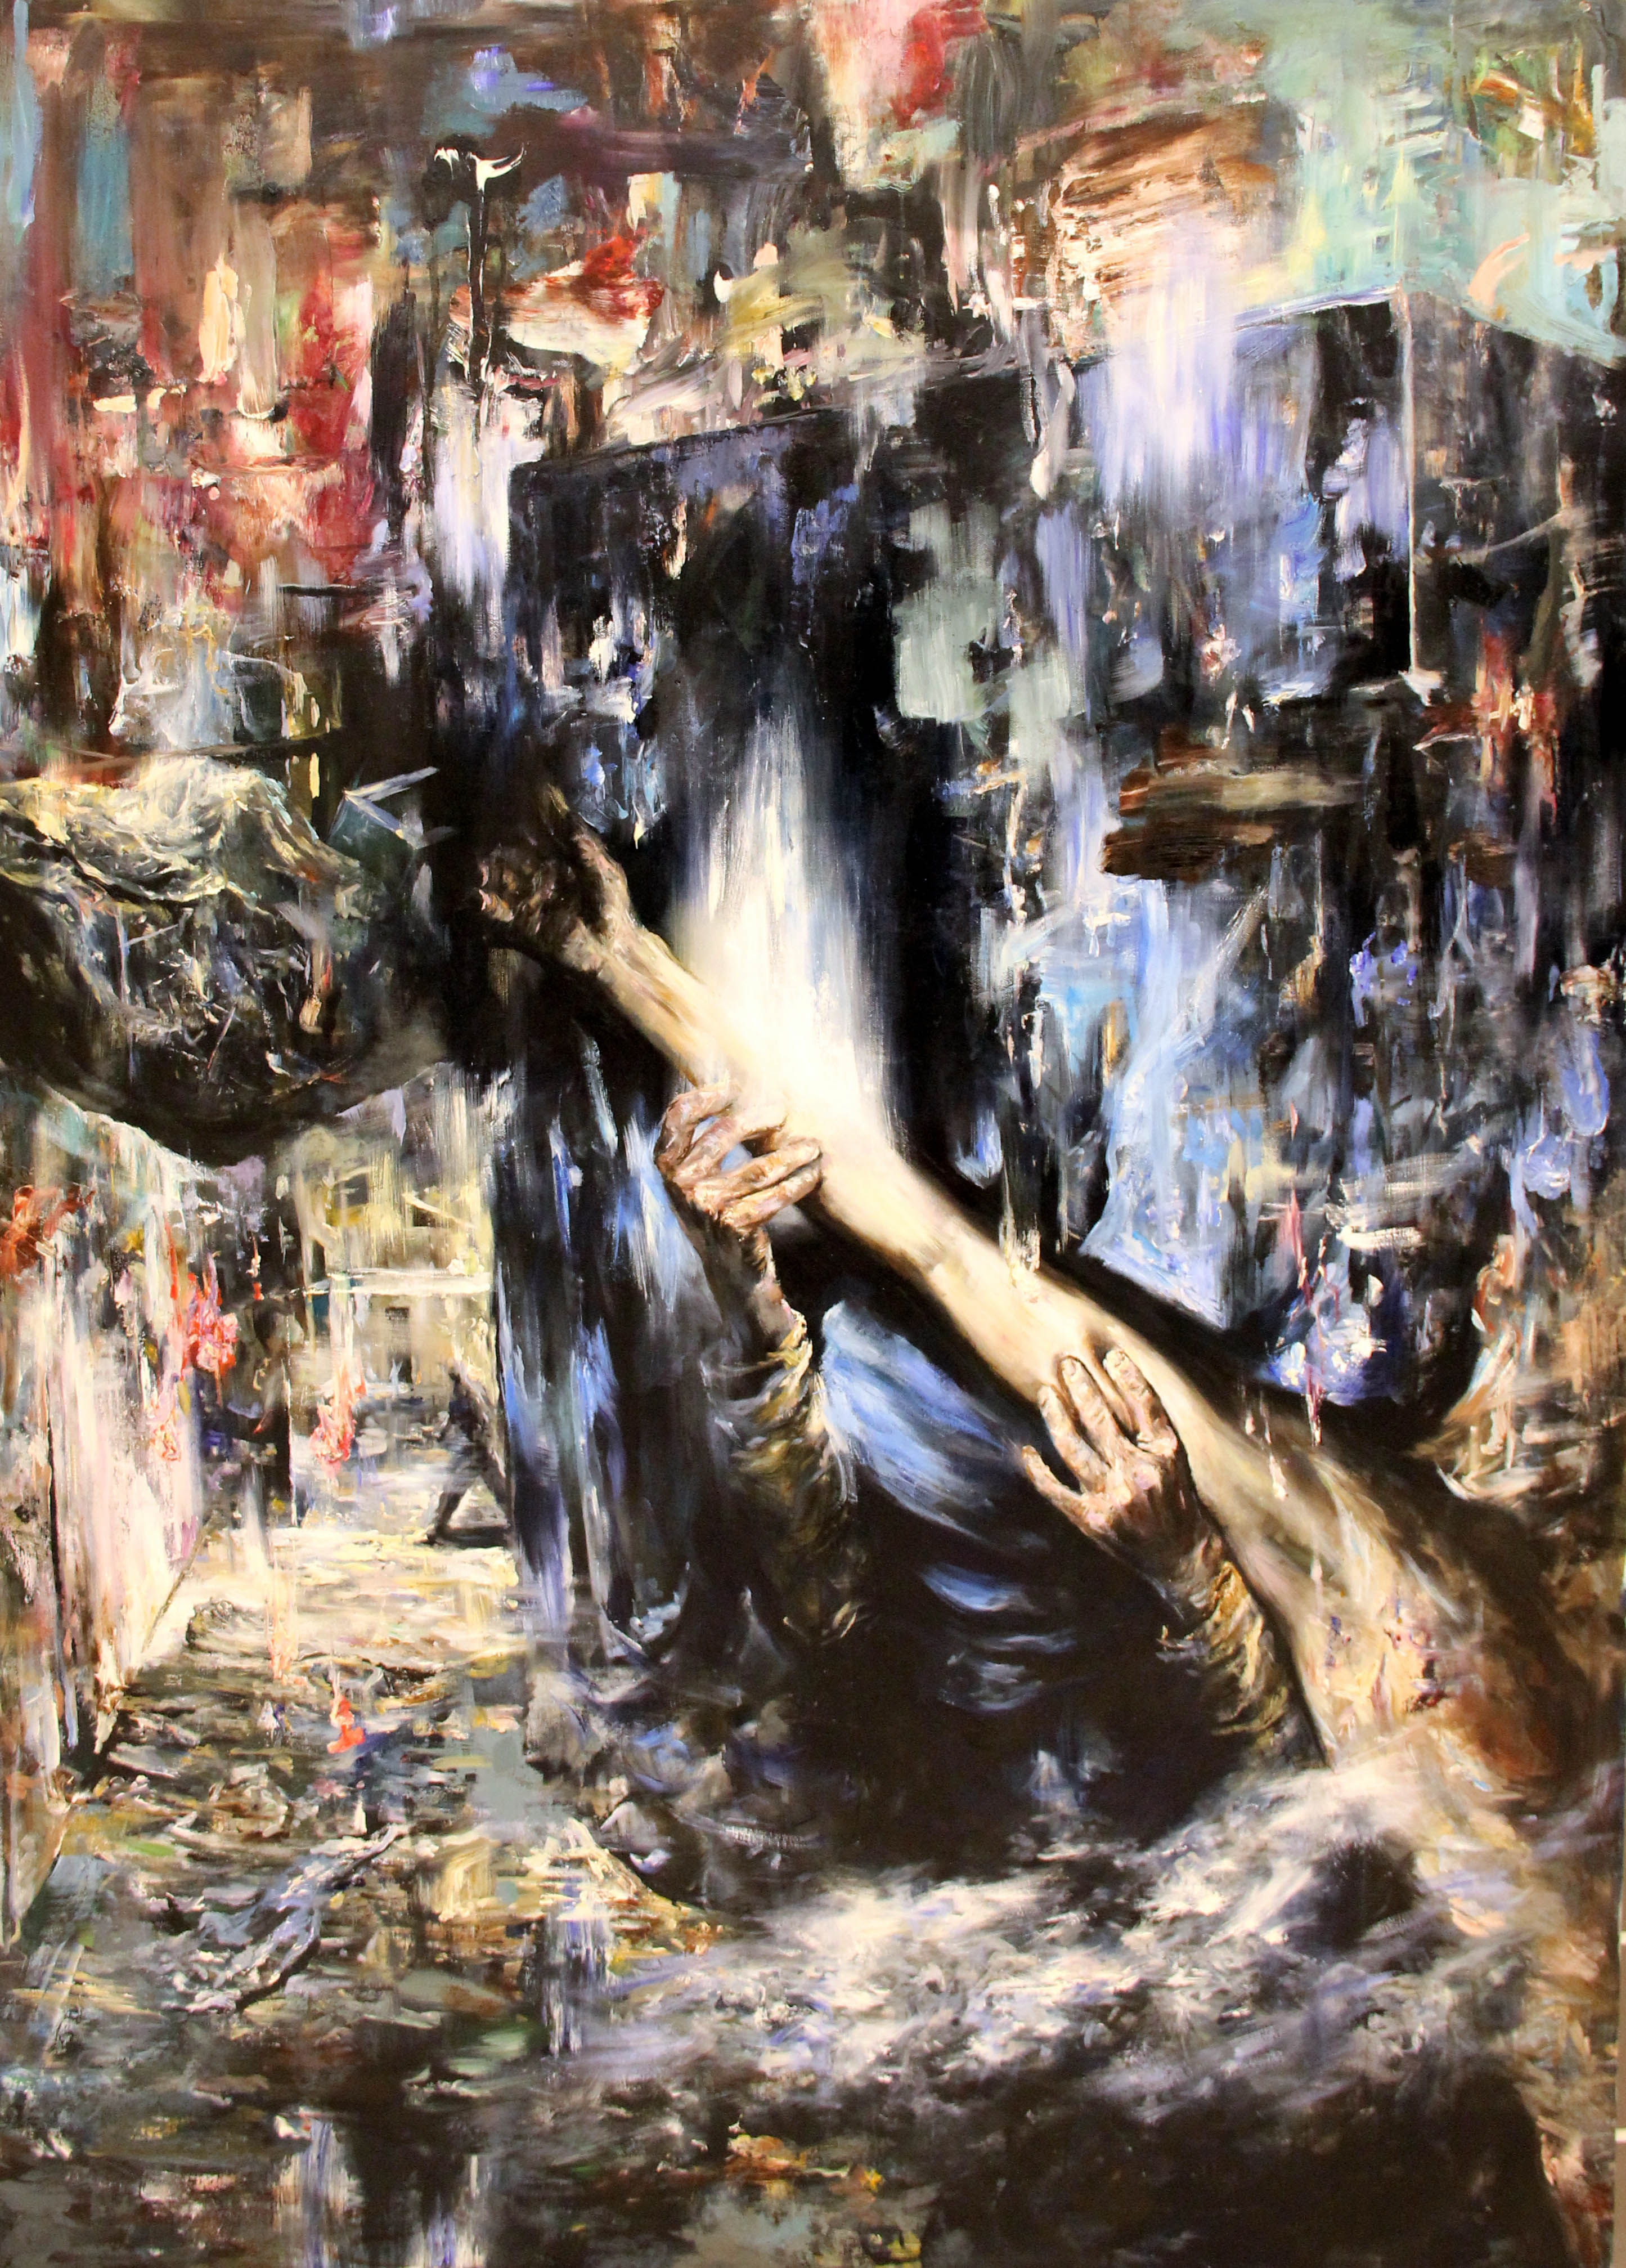 The Right Arm, 2014, Tuval üzerine yağlıboya- Oil on canvas, 160x116 cm